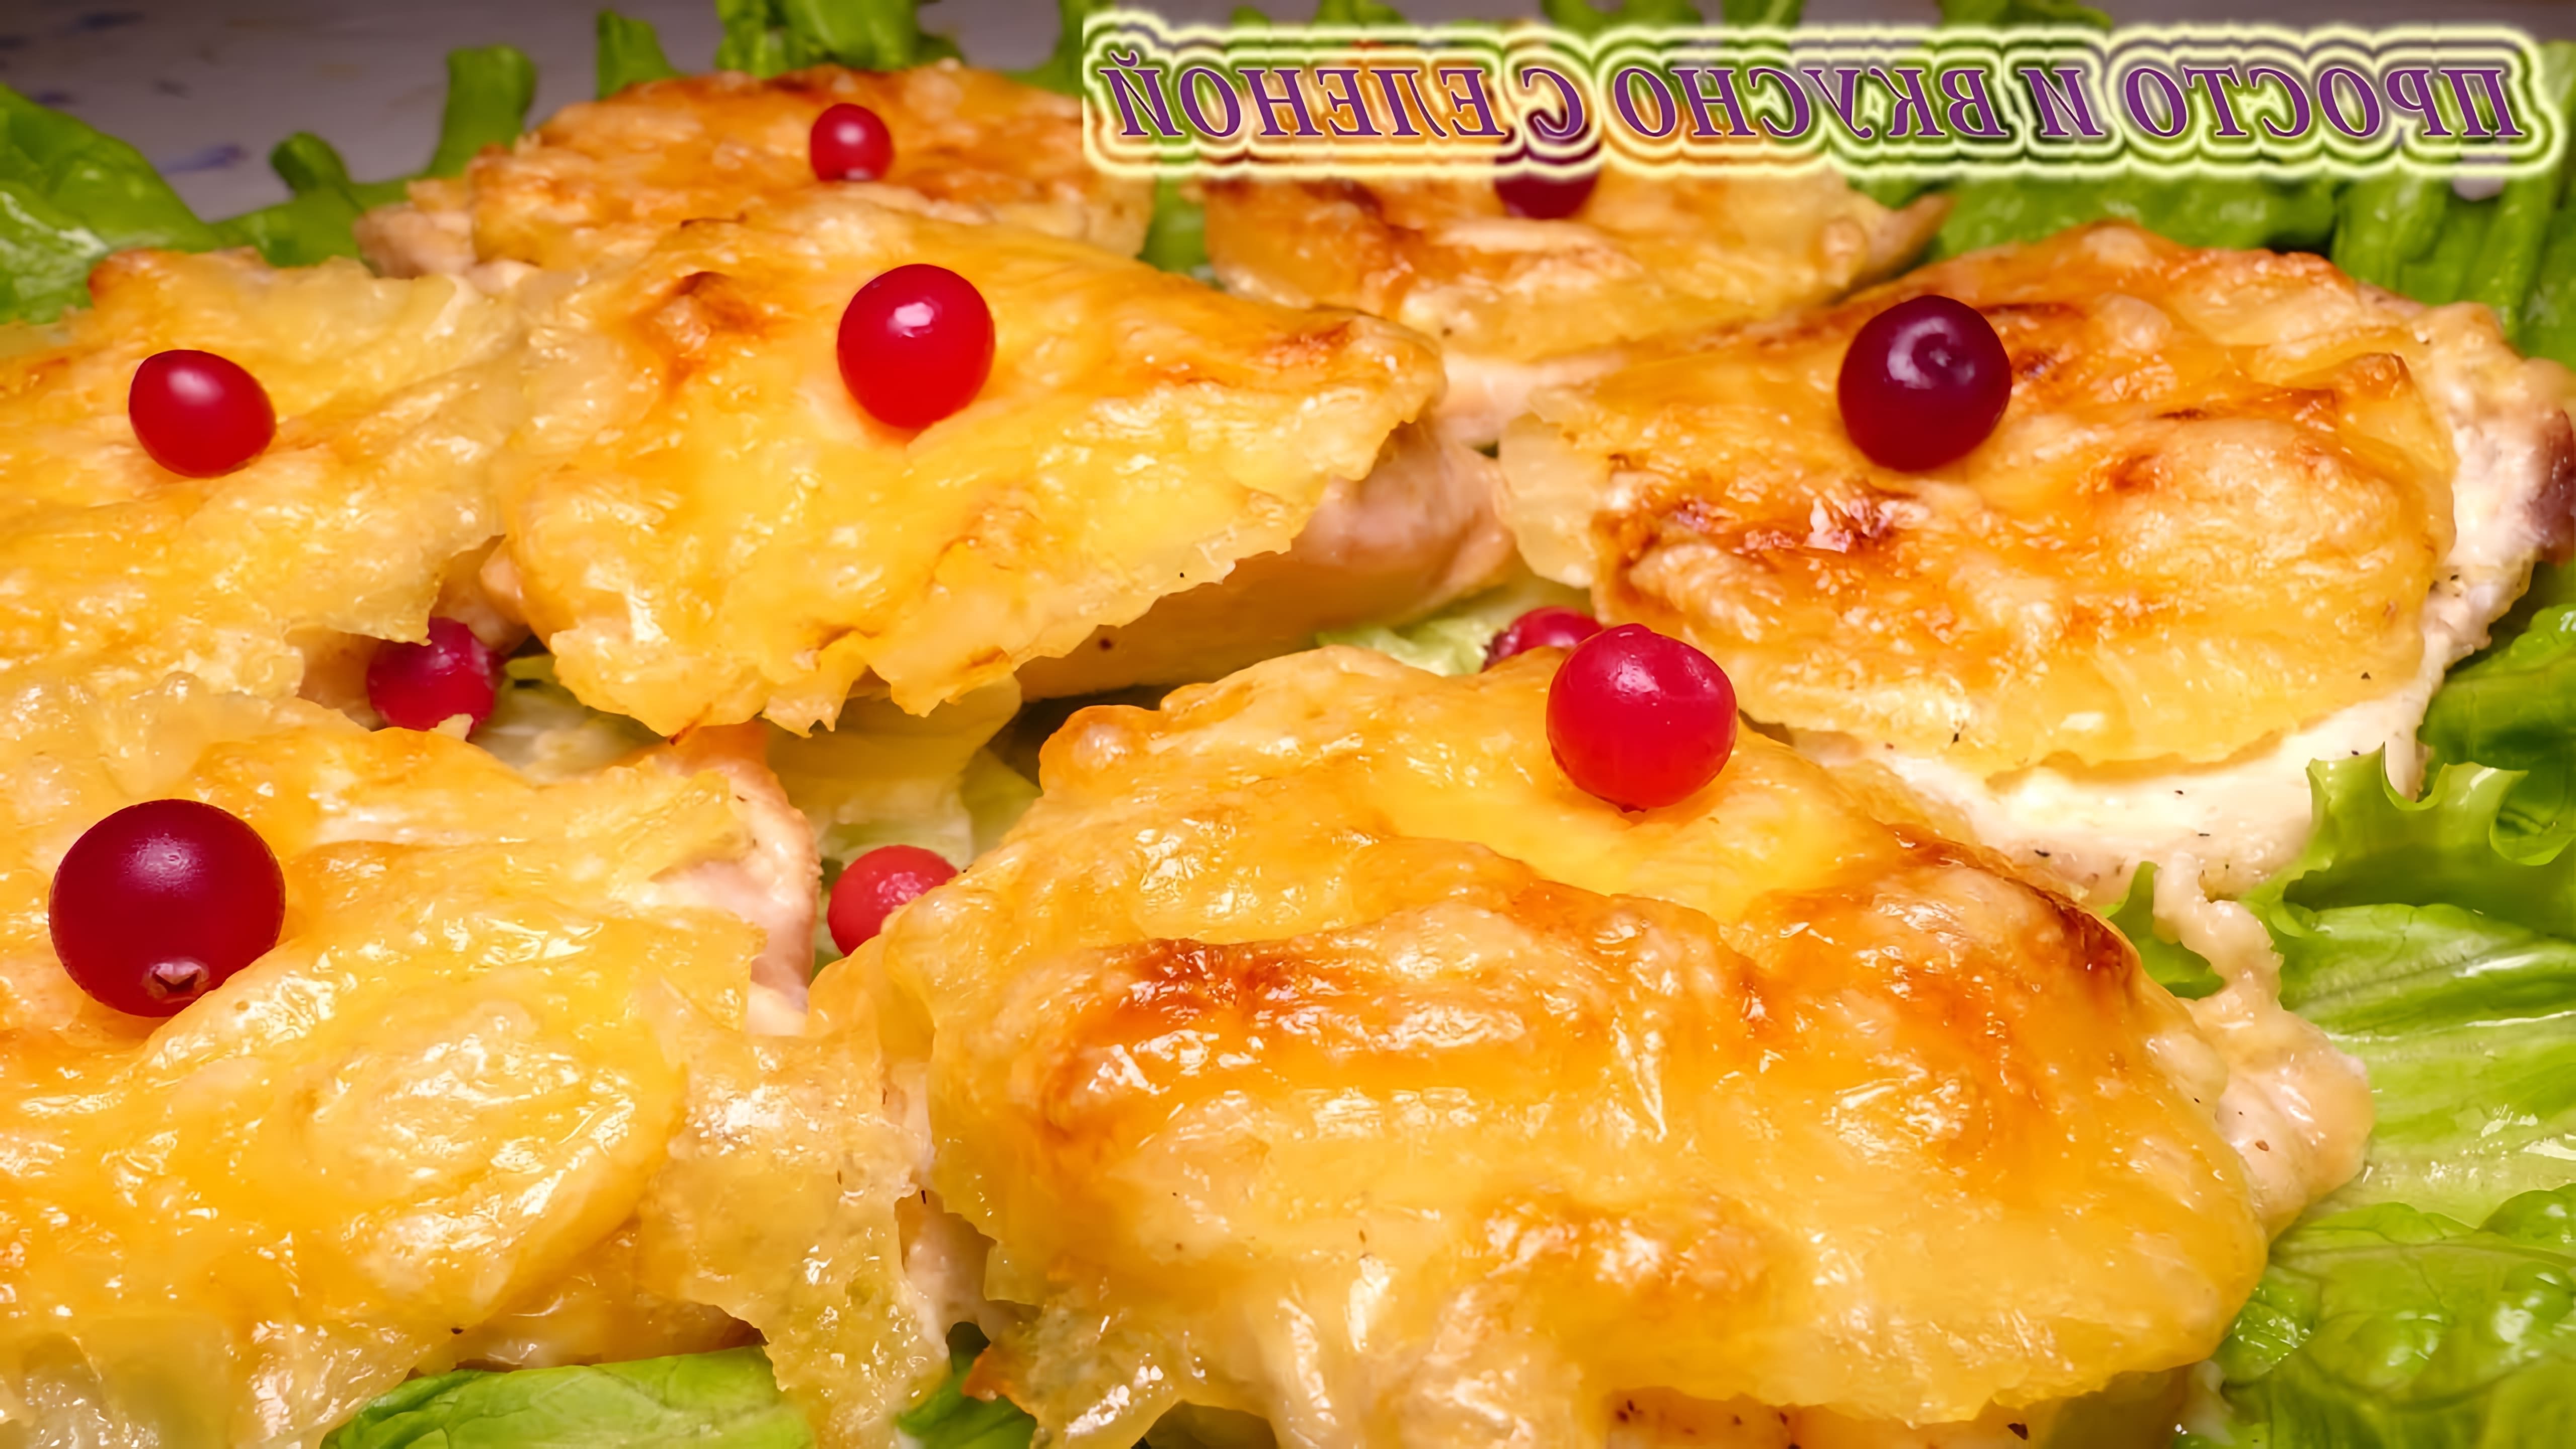 В этом видео демонстрируется рецепт приготовления потрясающего куриного филе с ананасами под сырной корочкой в духовке